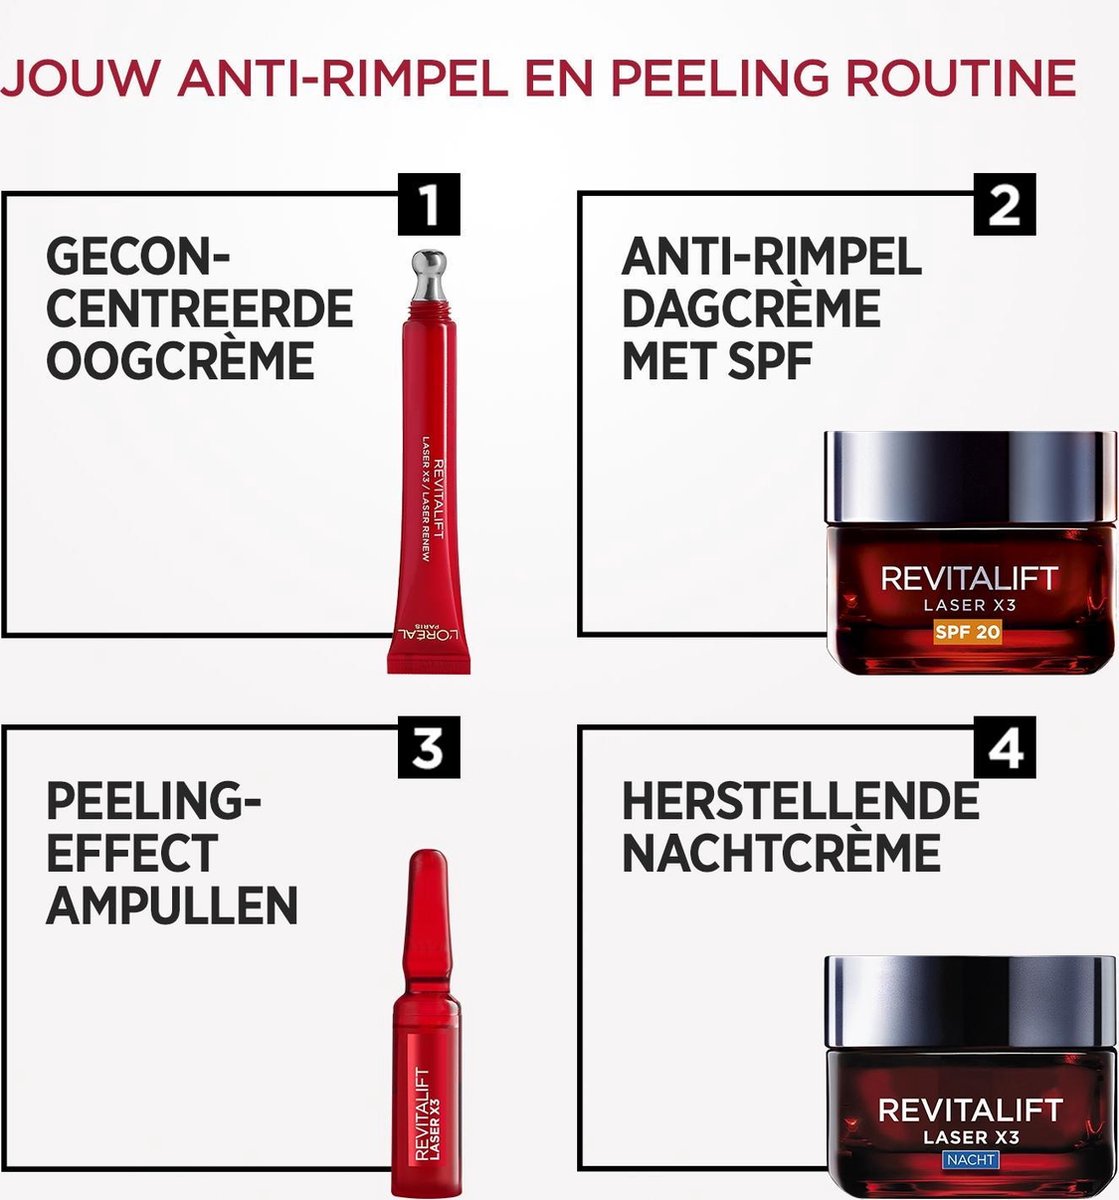 L'Oréal Paris Revitalift Laser Anti-rimpel Dagcrème SPF 20 - 50 ml bol.com